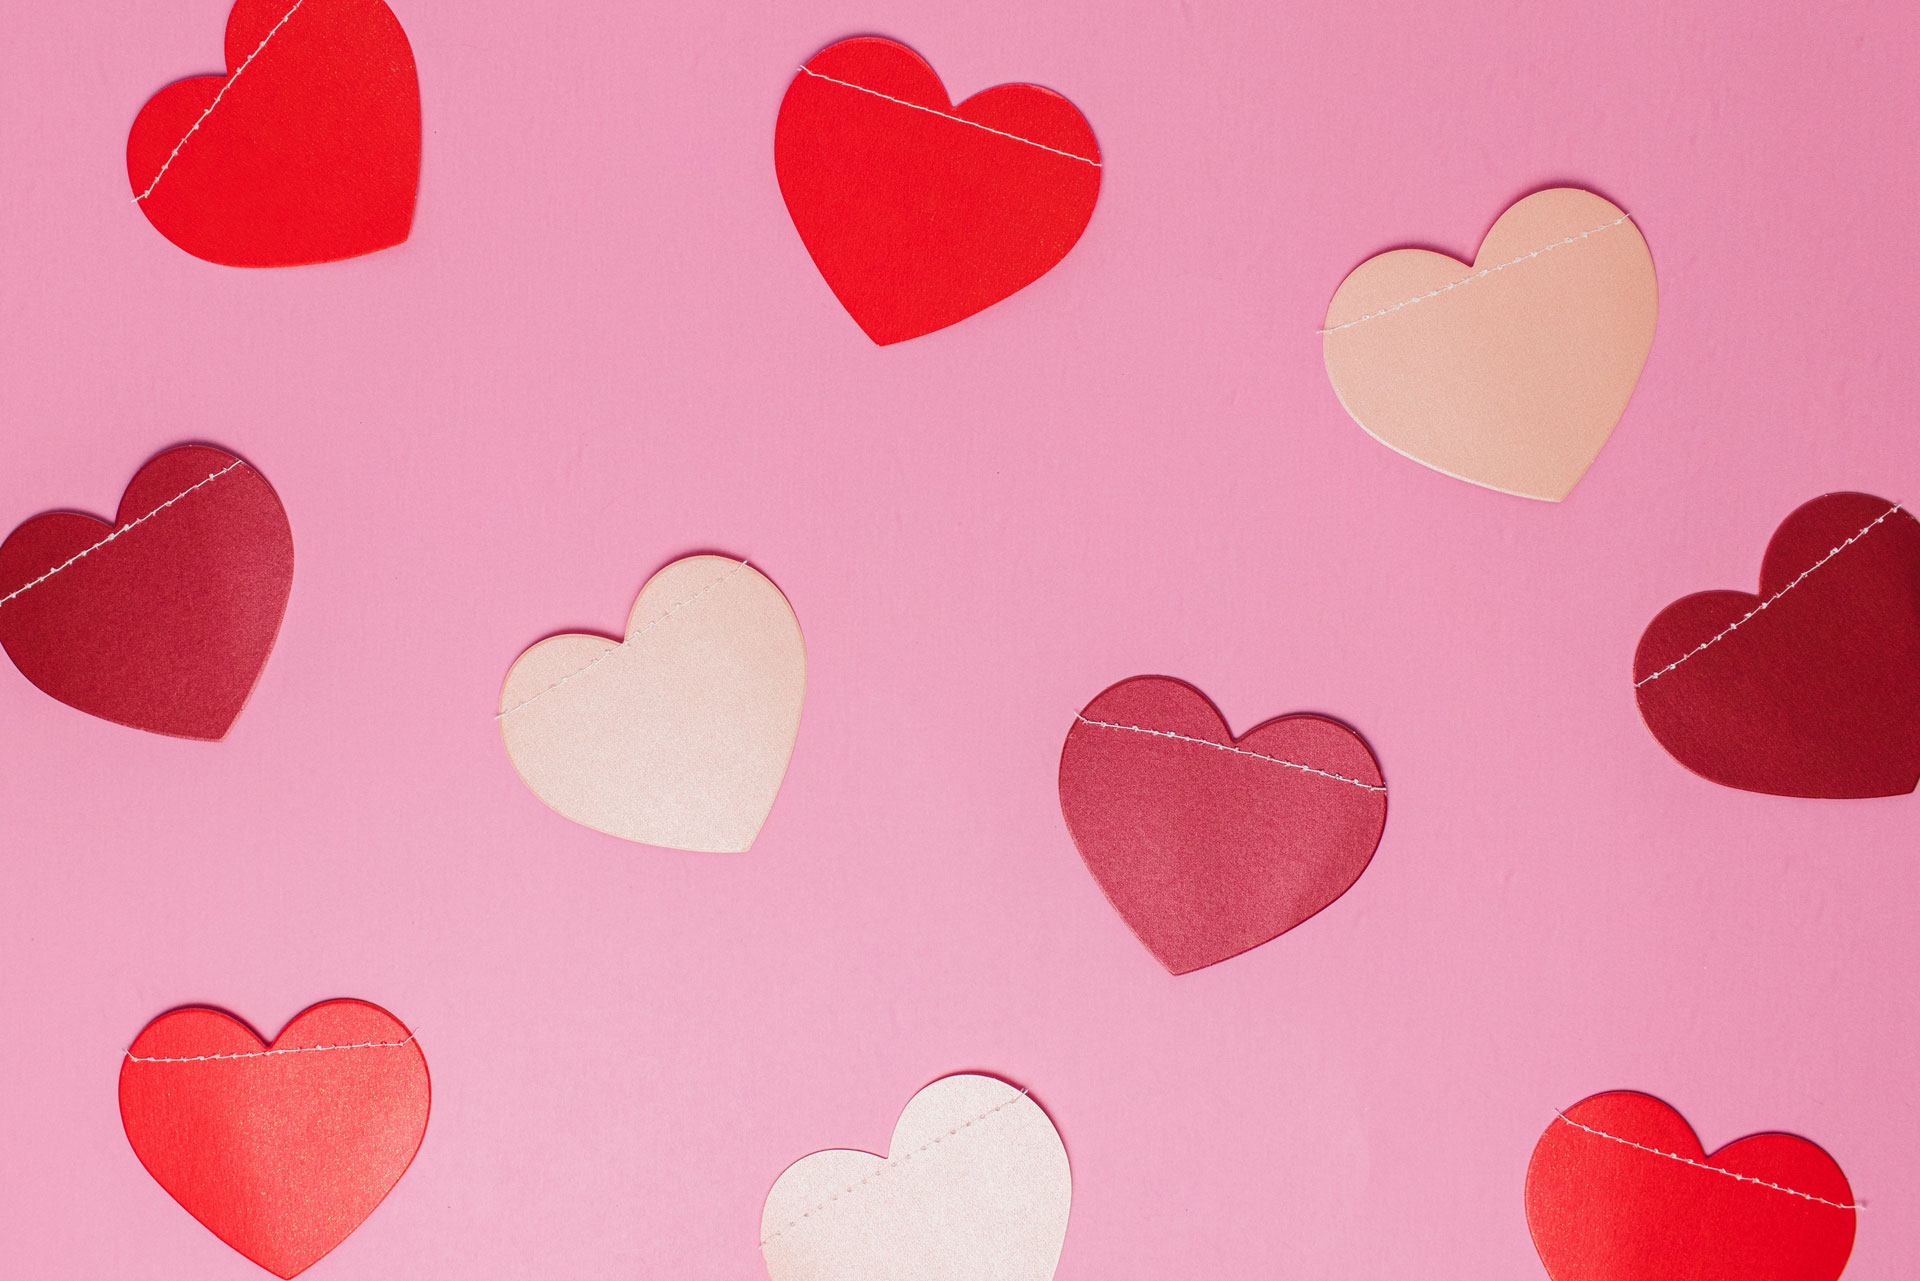 Valentines hearts - Unsplash